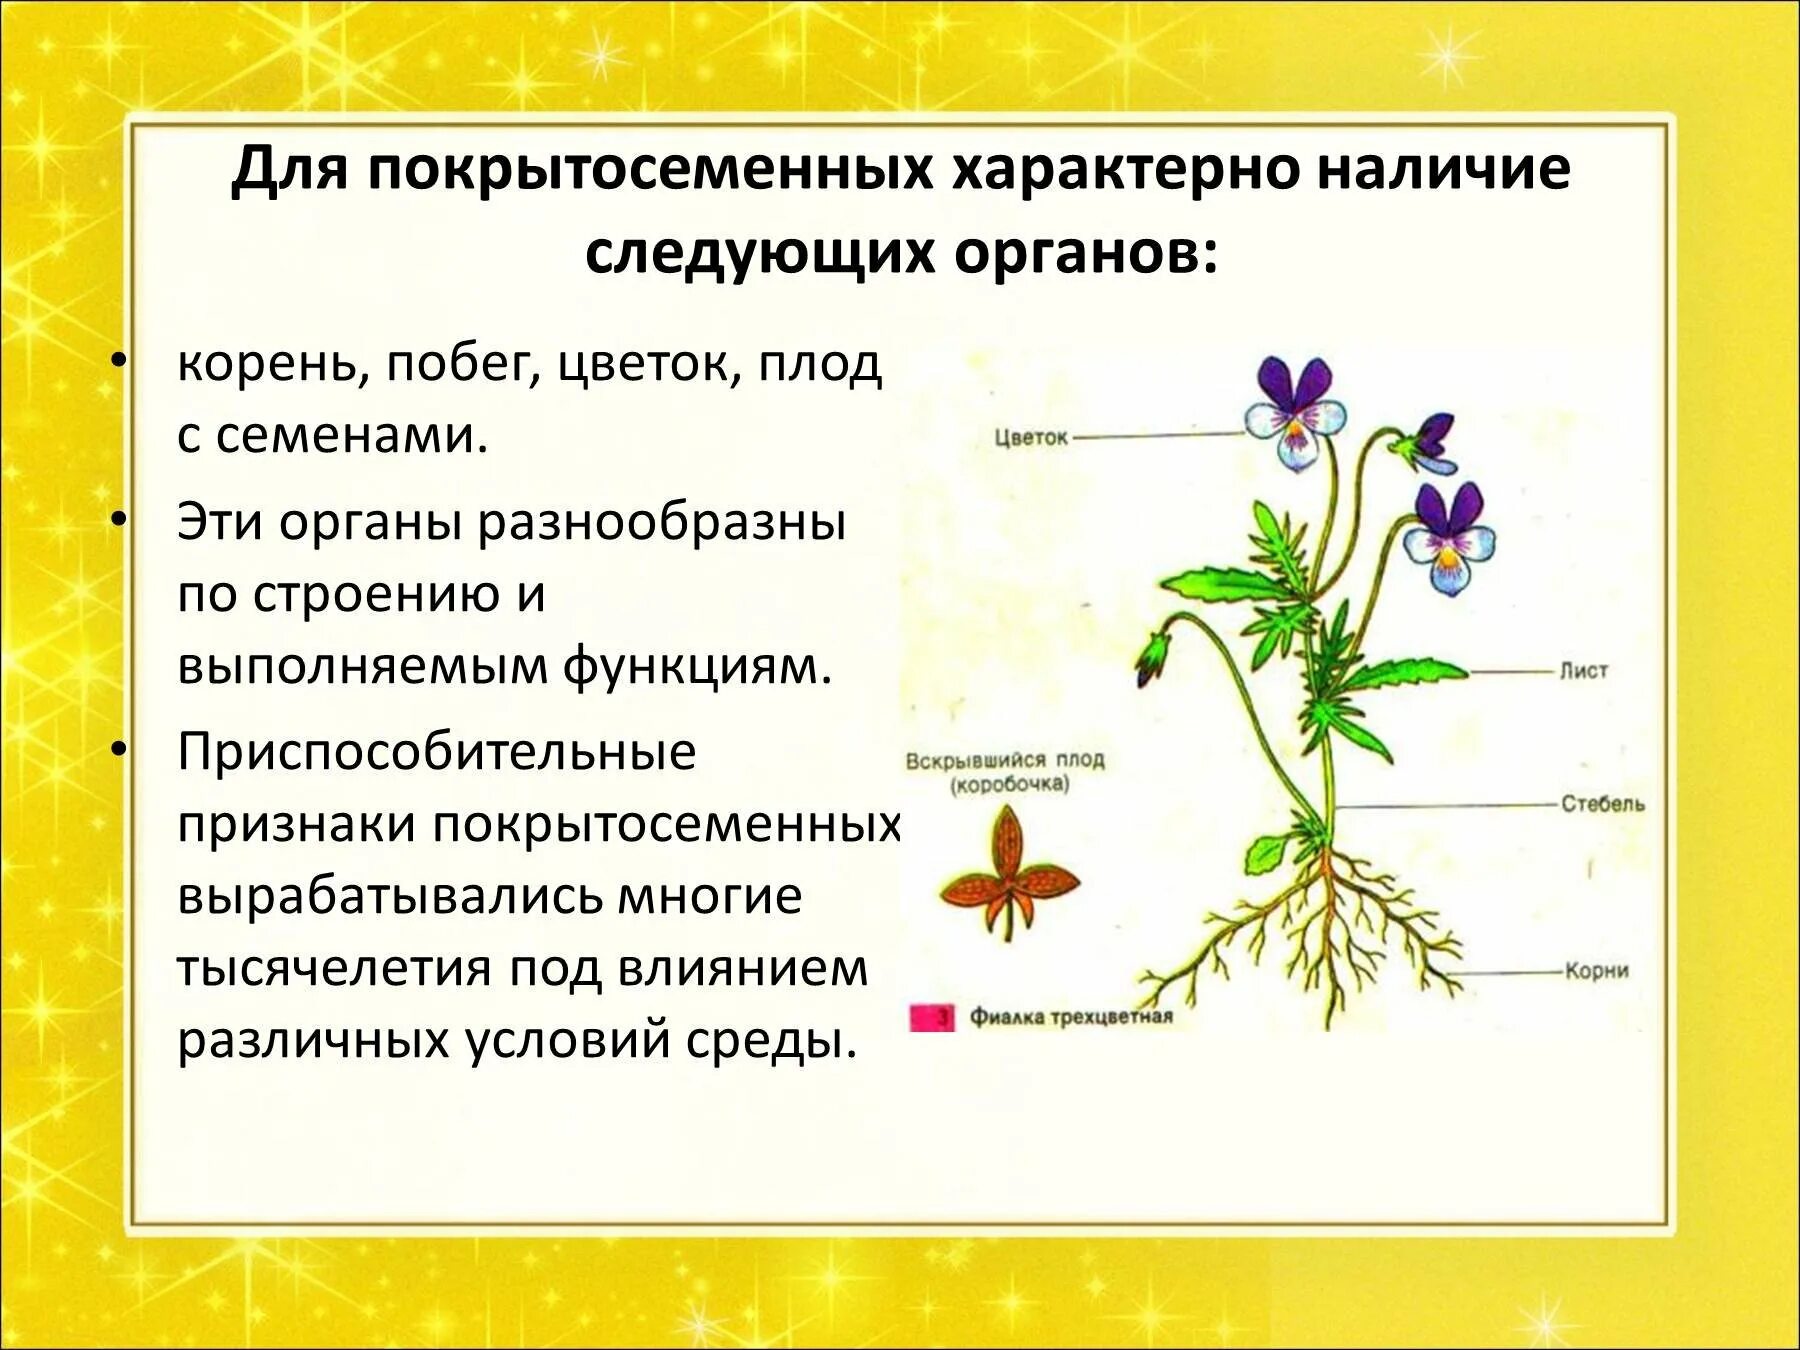 Особенностями покрытосеменных растений являются. Покрытосеменные цветковые растения строение. Строение цветковых покрытосеменных растений. Особенности строения покрытосеменных растений. Изучение внешнего строения покрытосеменных(цветковых) растений.